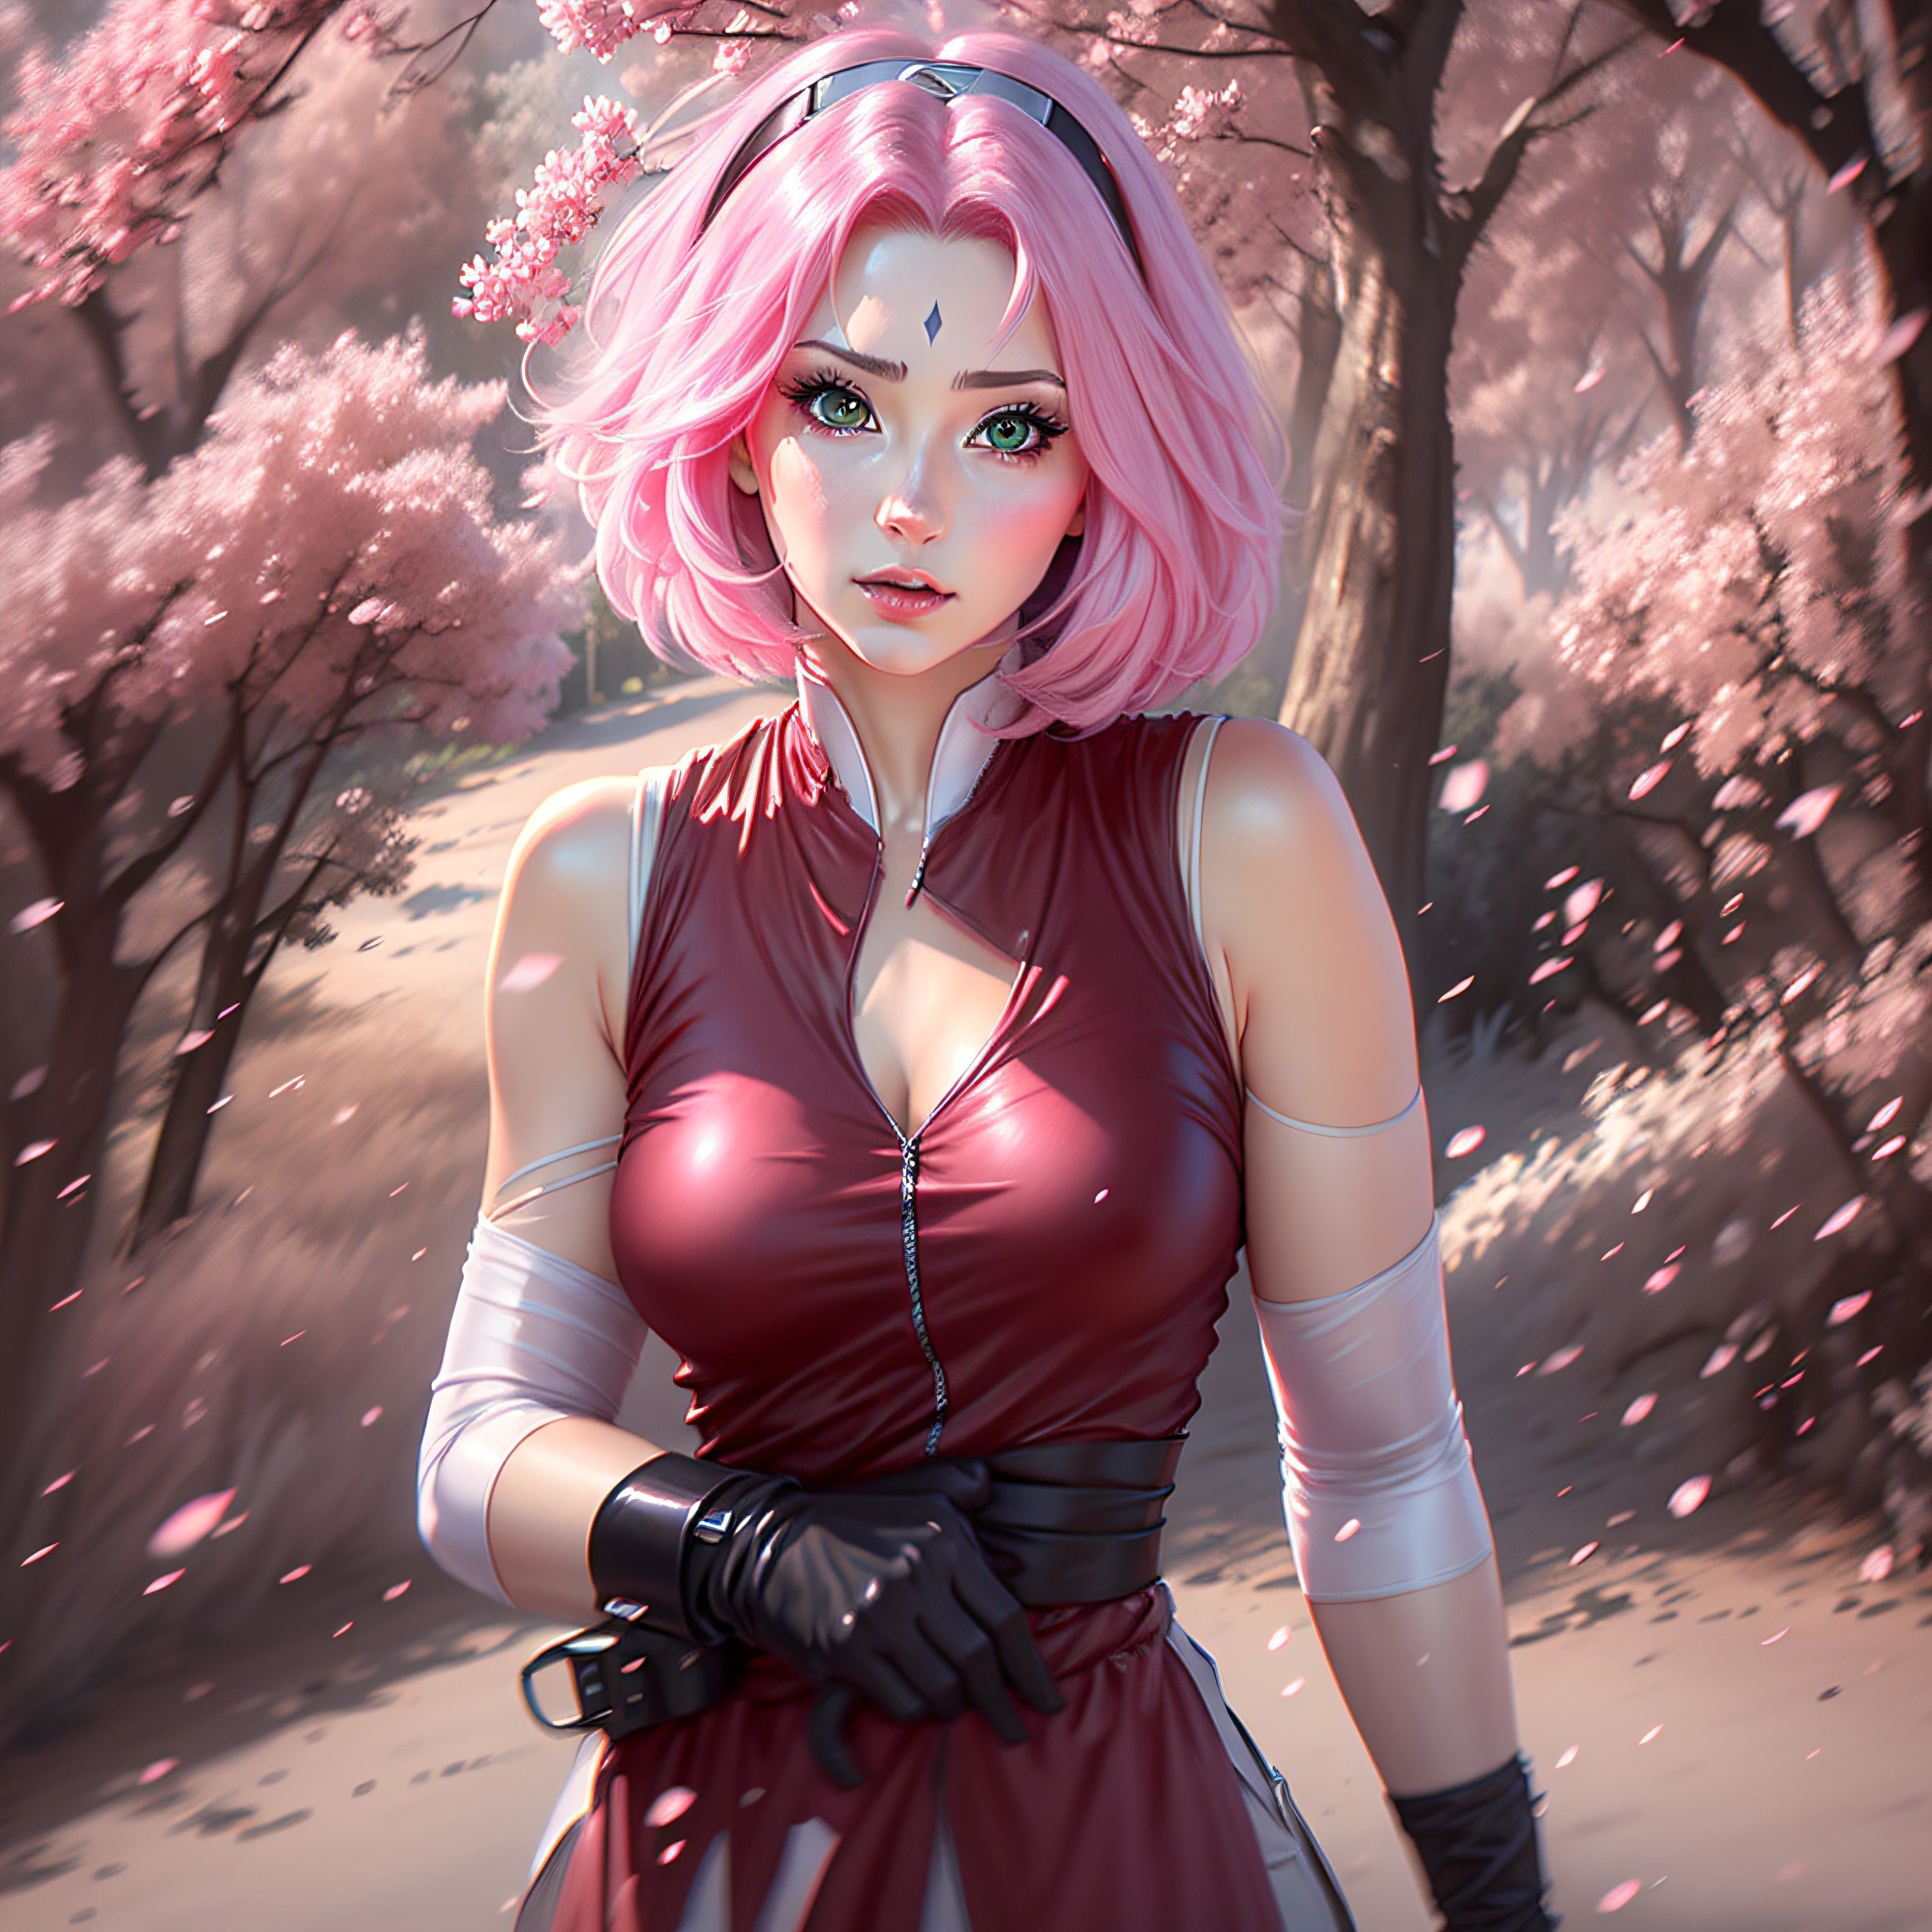 Sakura belle et grande anime cheveux courts super réaliste et bien détaillé